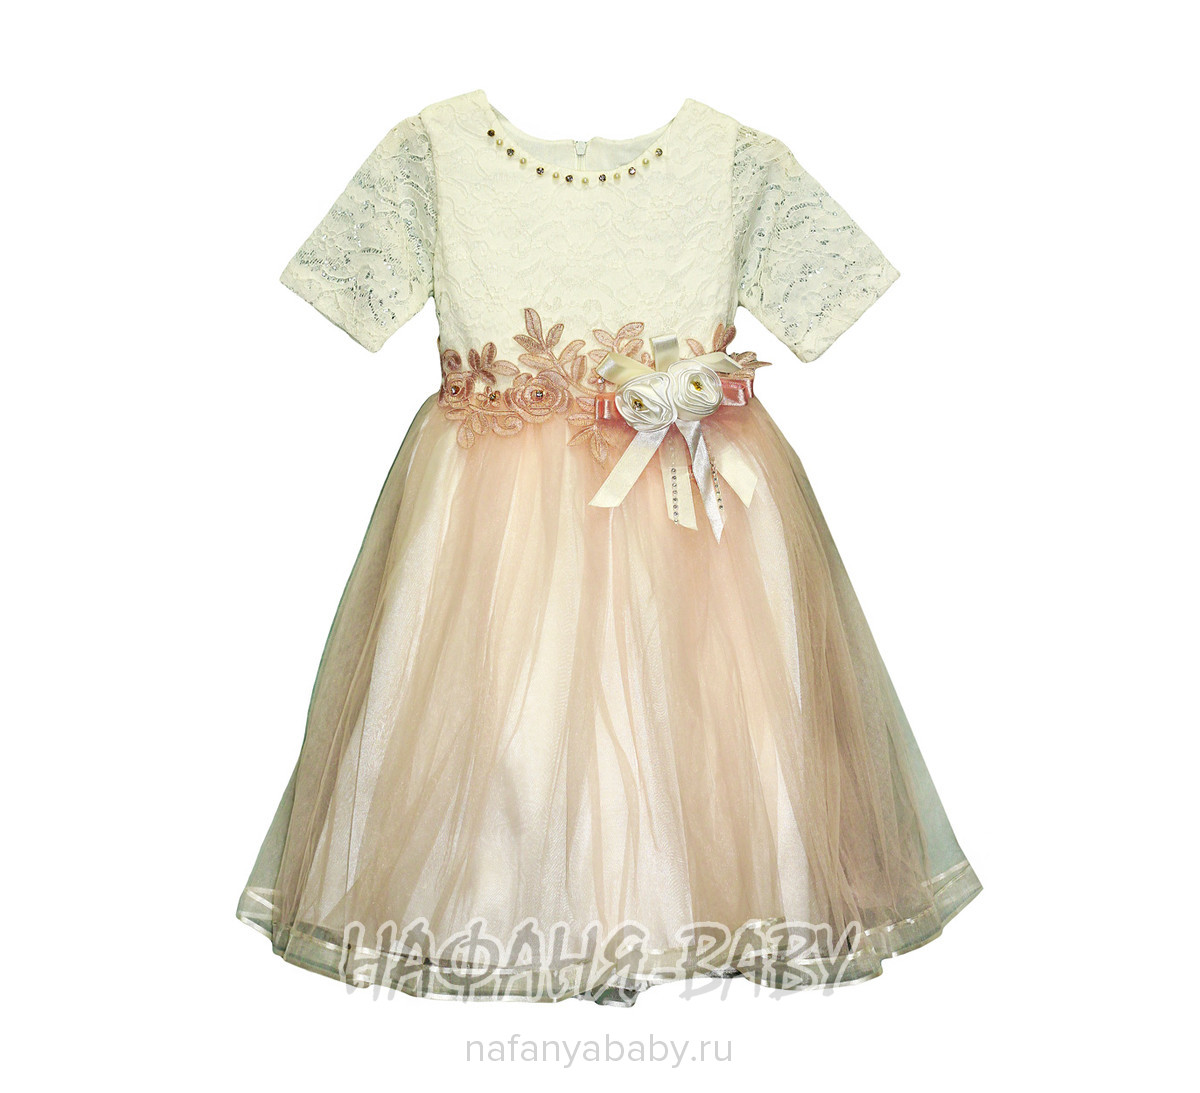 Детское платье SERAMIS, купить в интернет магазине Нафаня. арт: 6016.